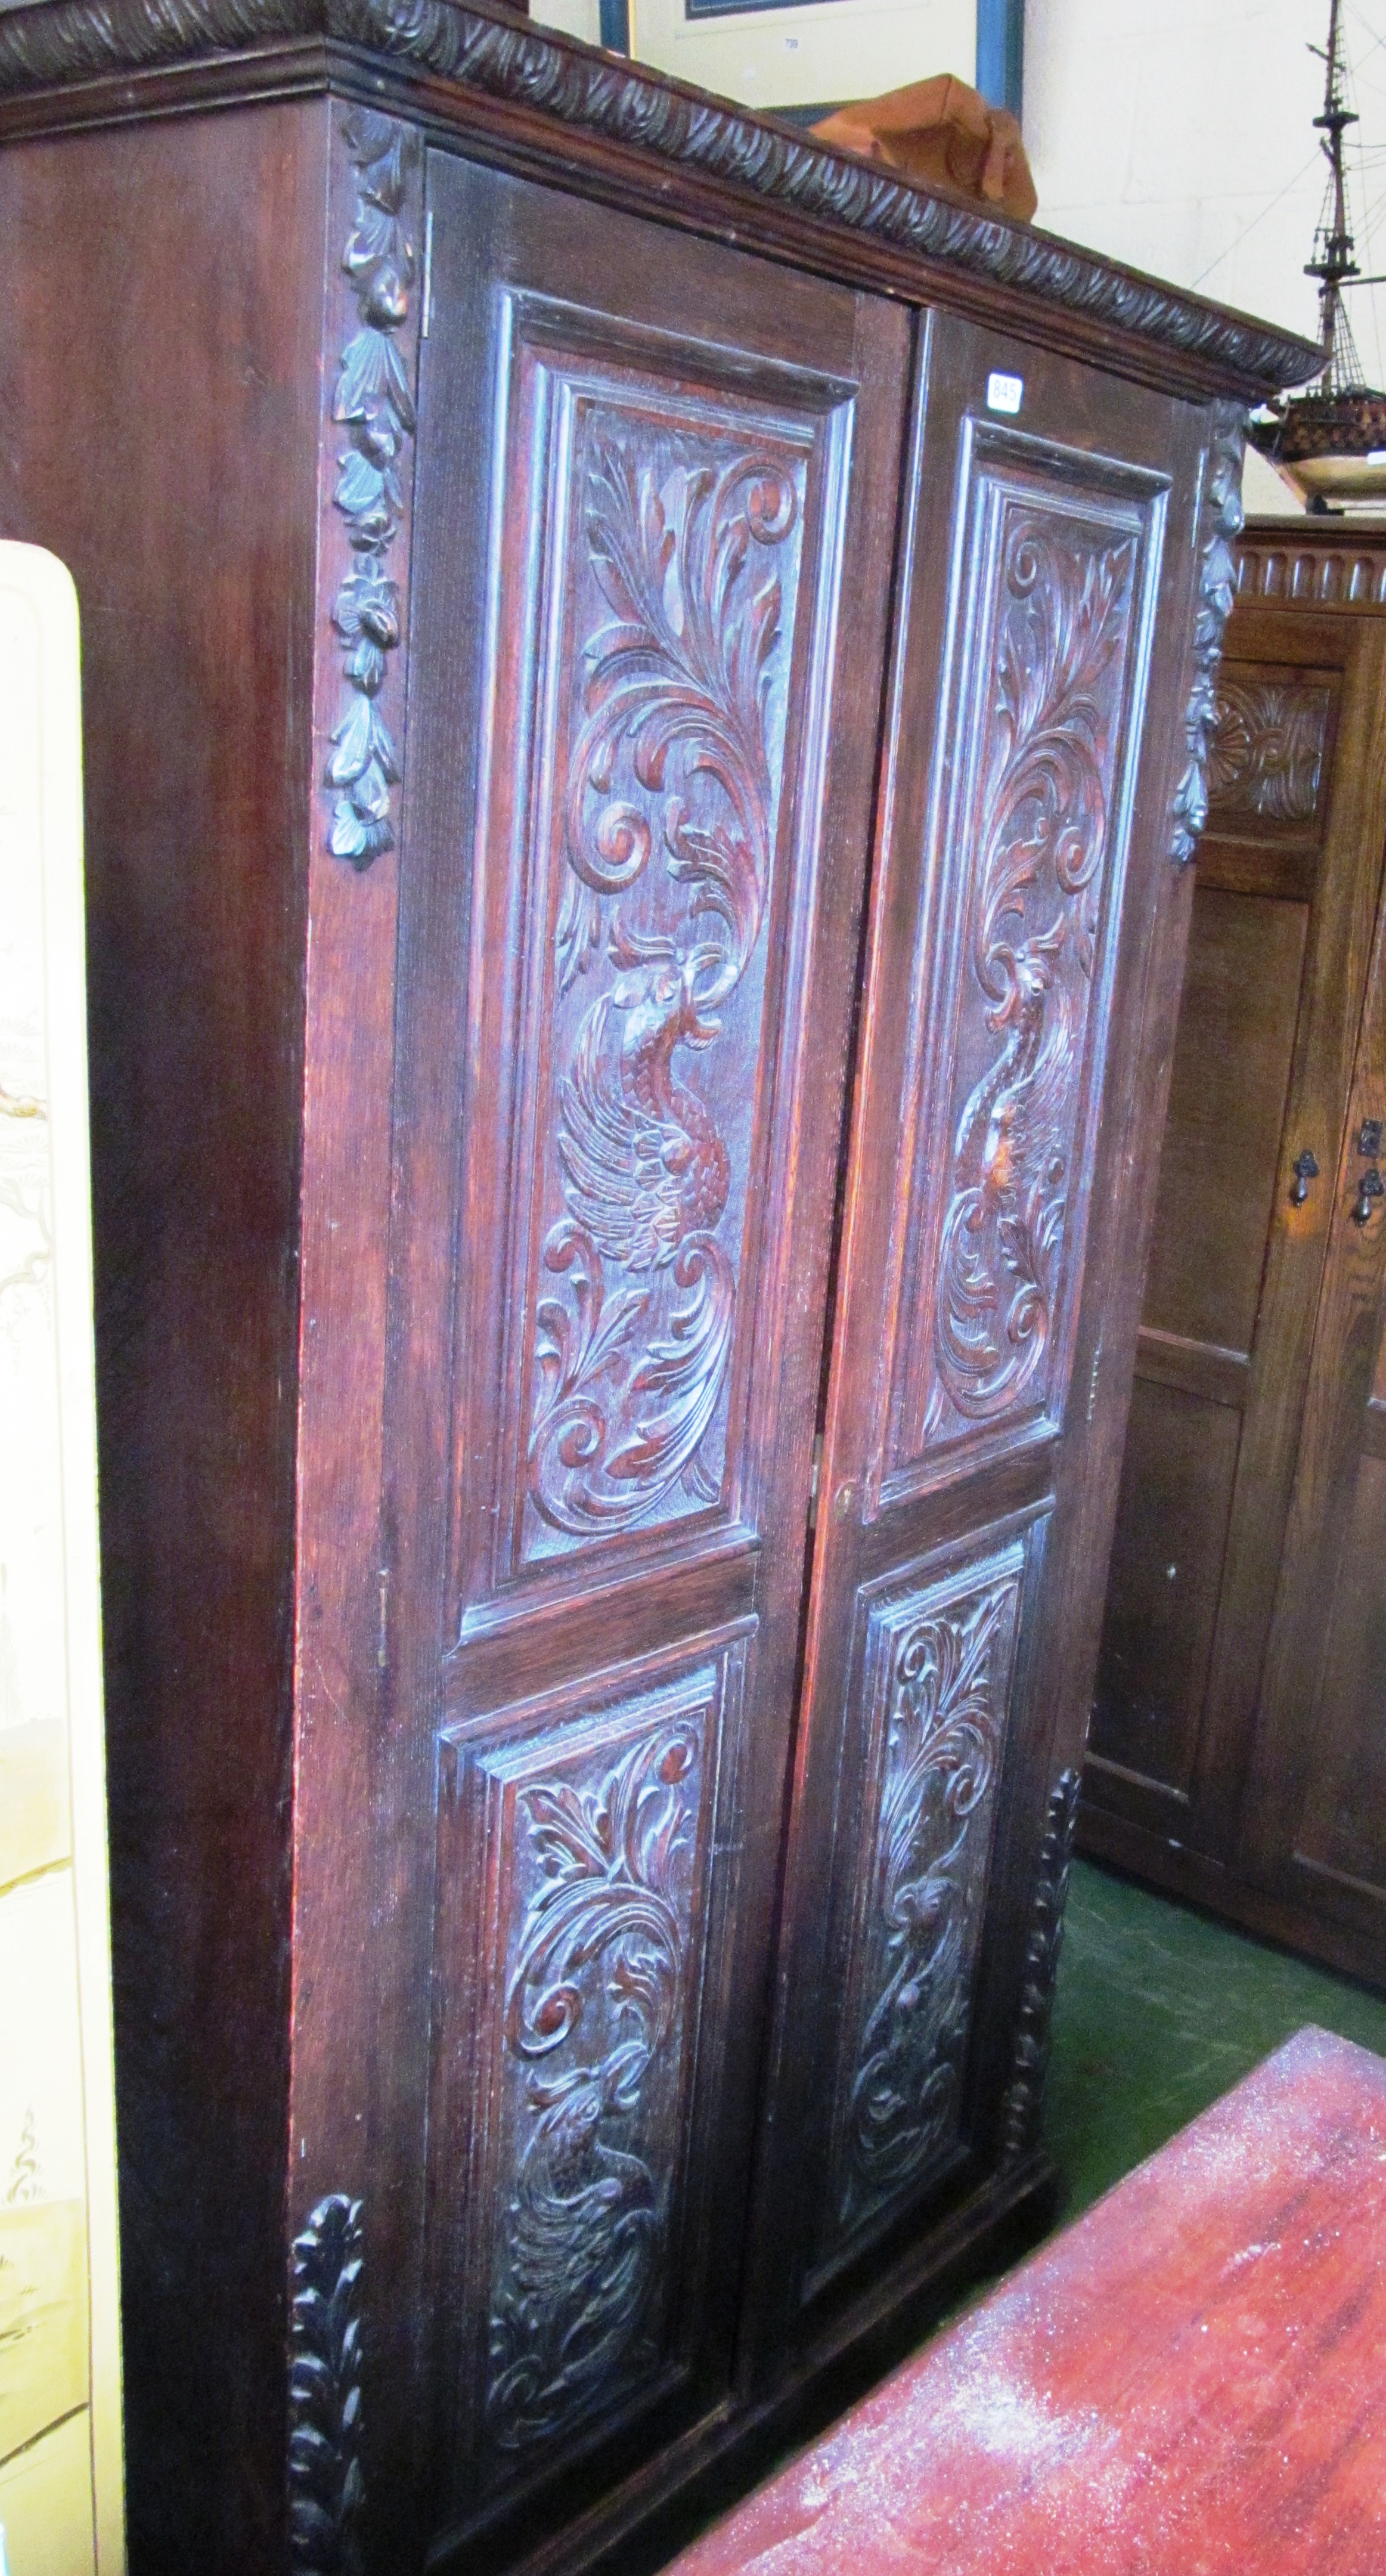 A carved oak wardrobe